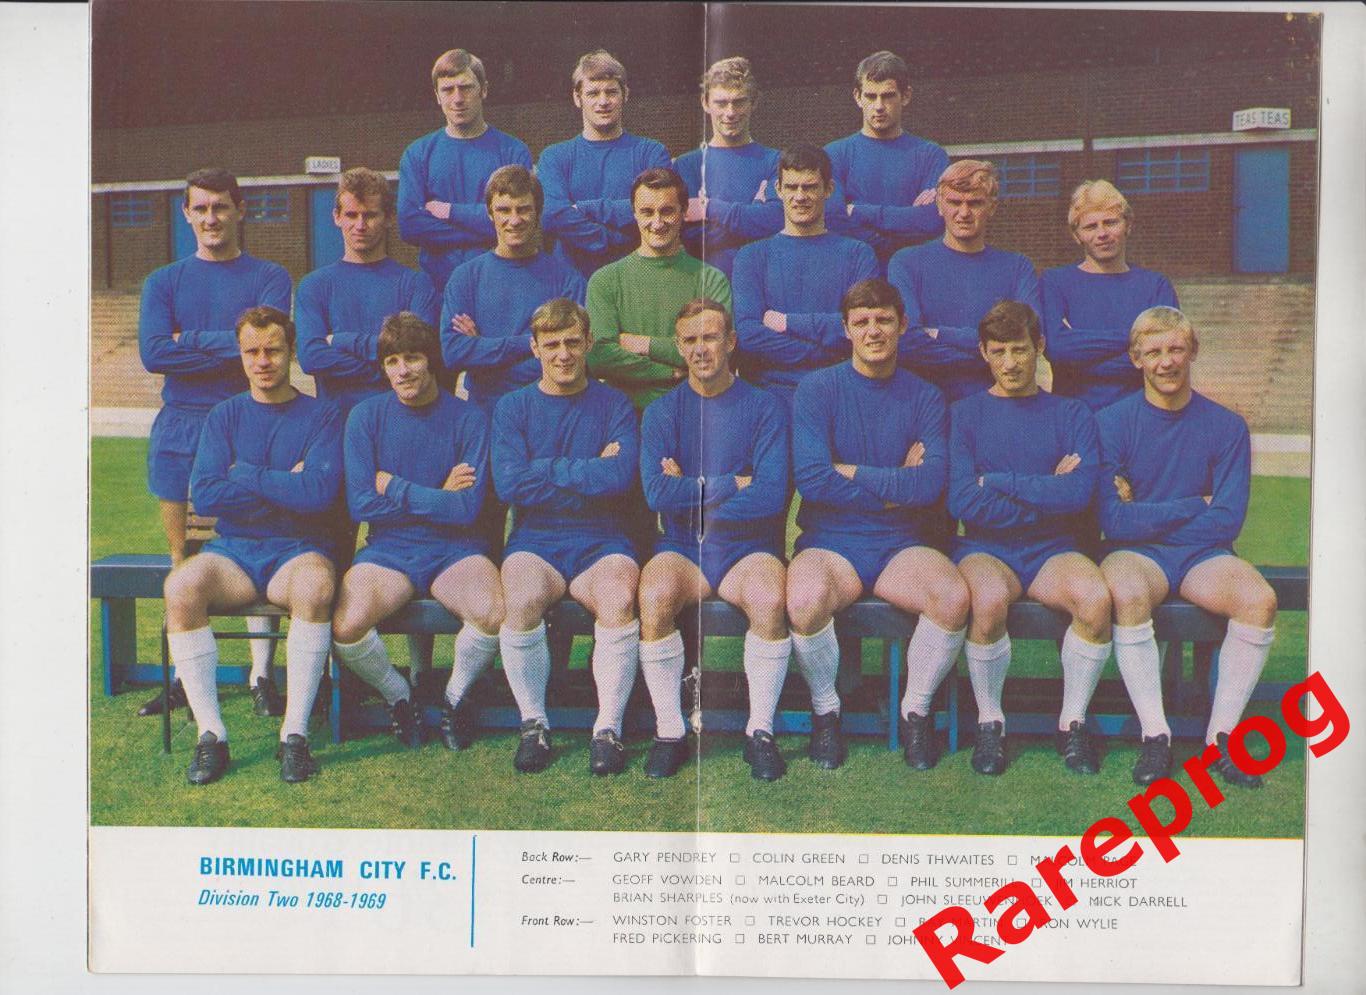 журнал Football League Review # 37 1968 Англия - постер Бирмингем Сити 1